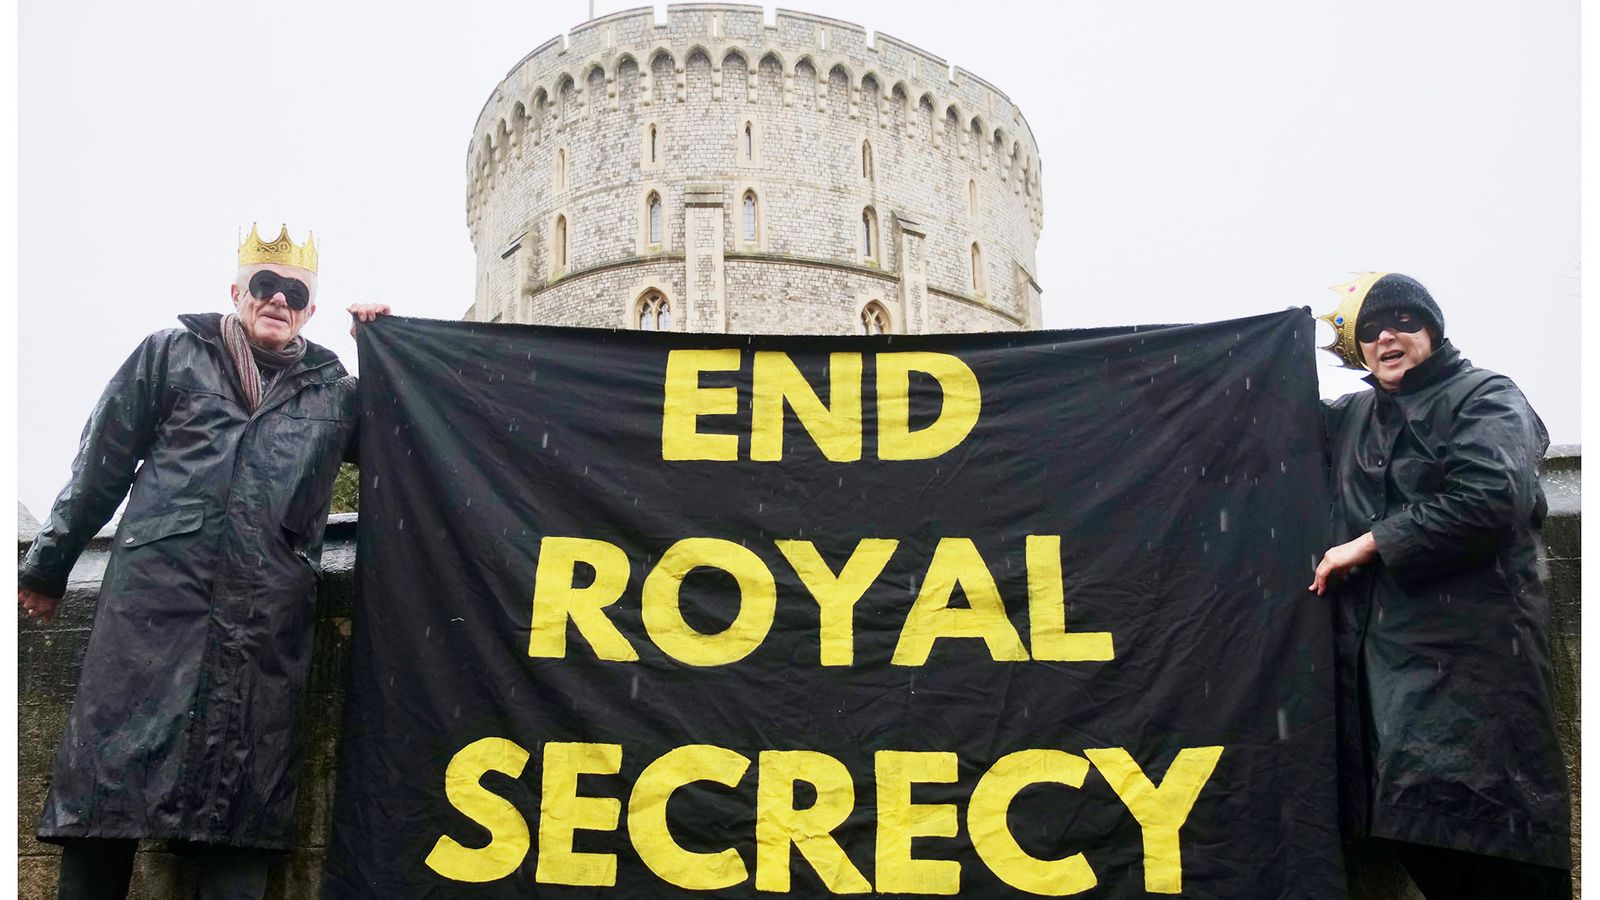 Групови протести срещу монархията в територията на замъка Уиндзор срещу „кралската тайна“